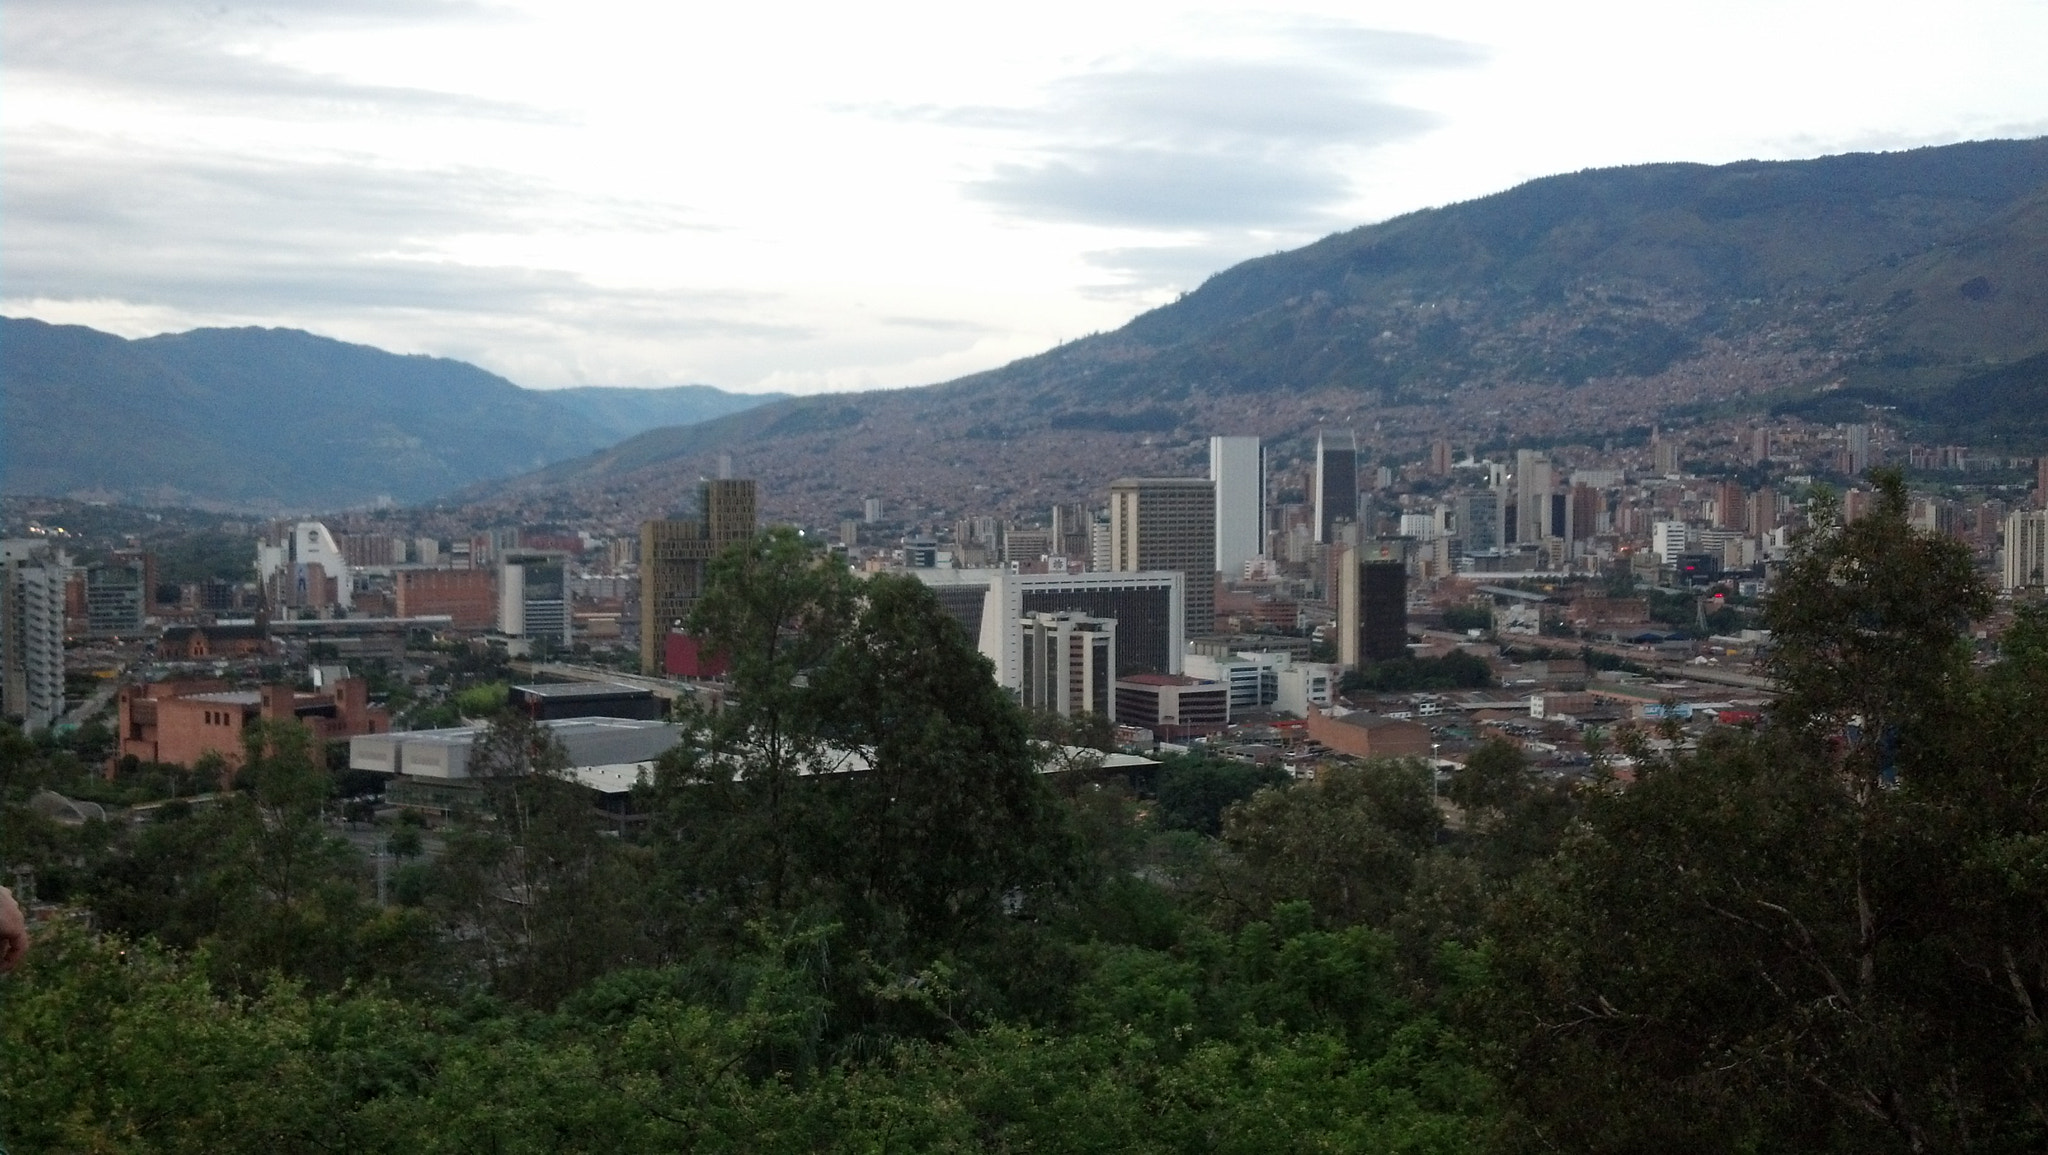 Motorola DROID RAZR sample photo. Medellin, vista desde pueblito paisa. photography